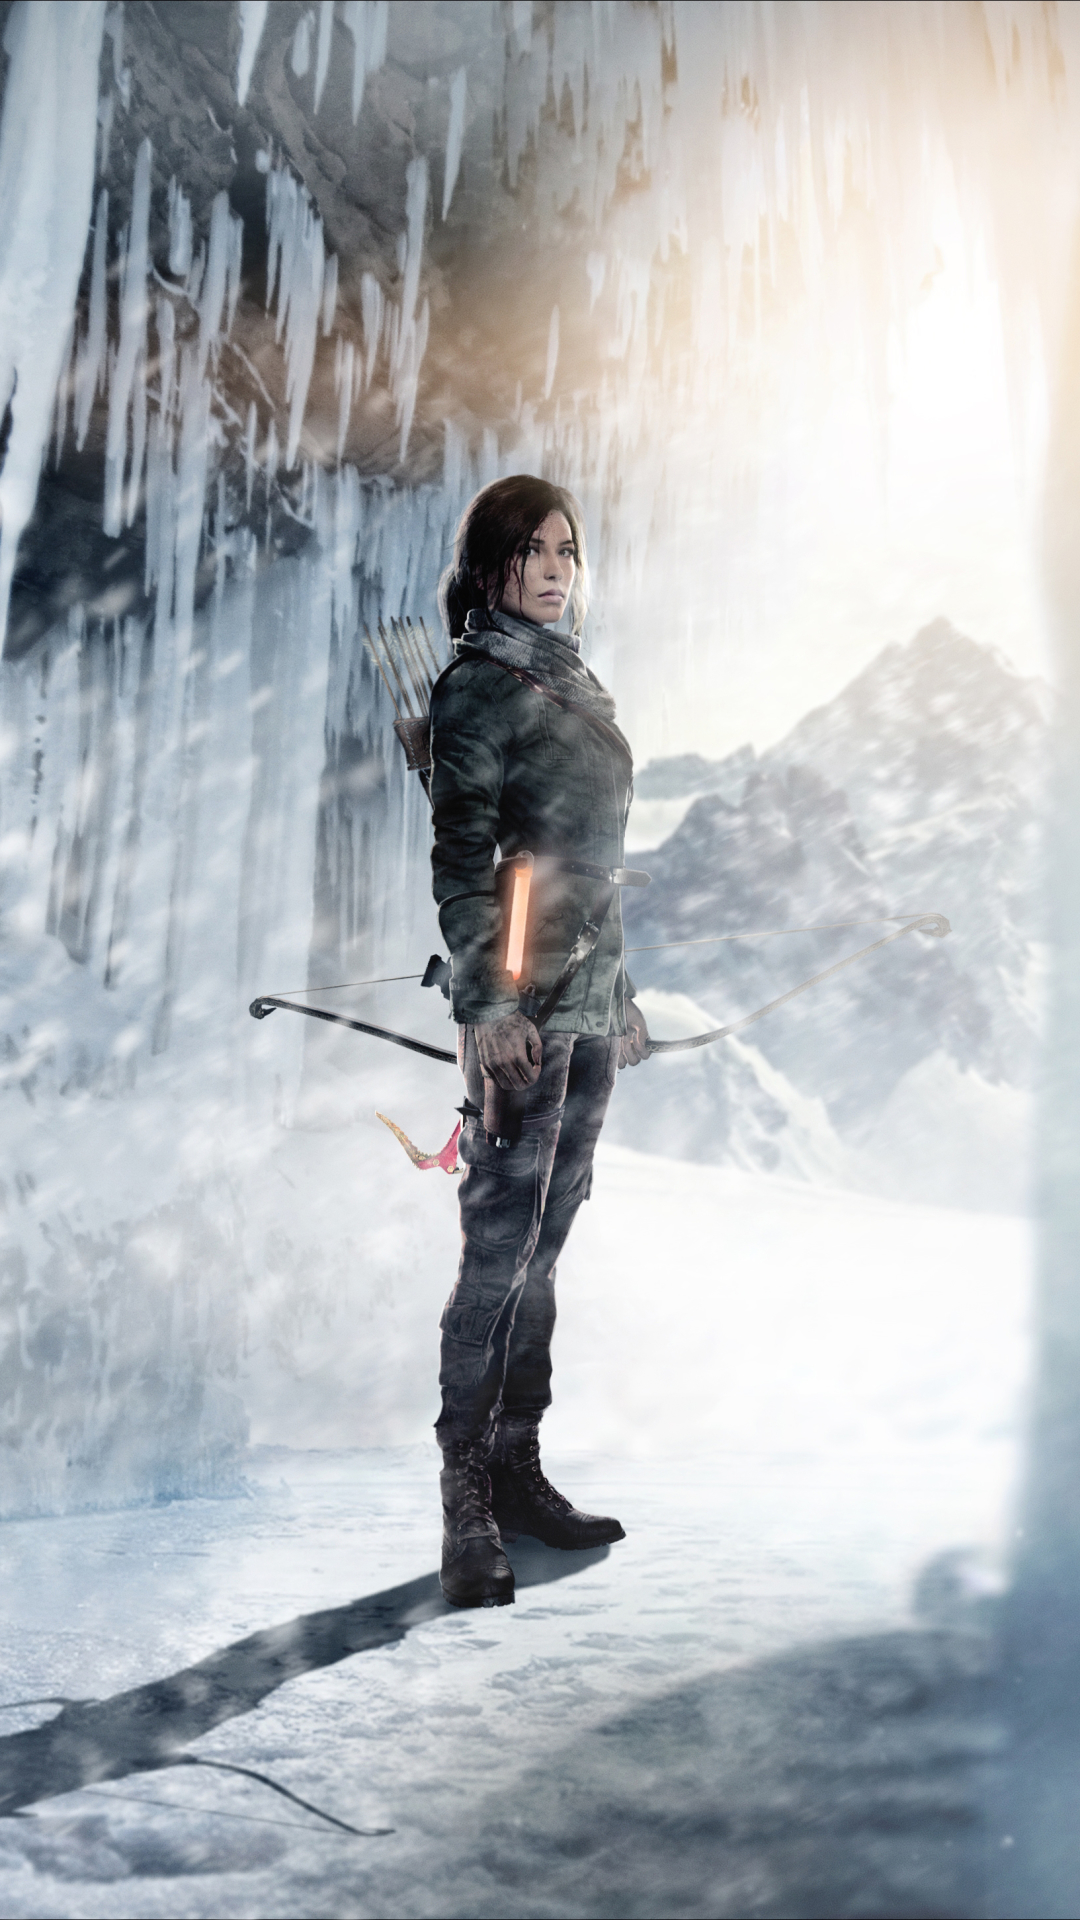 Descarga gratuita de fondo de pantalla para móvil de Invierno, Hielo, Tomb Raider, Videojuego, Mujer Guerrera, Lara Croft, Rise Of The Tomb Raider.